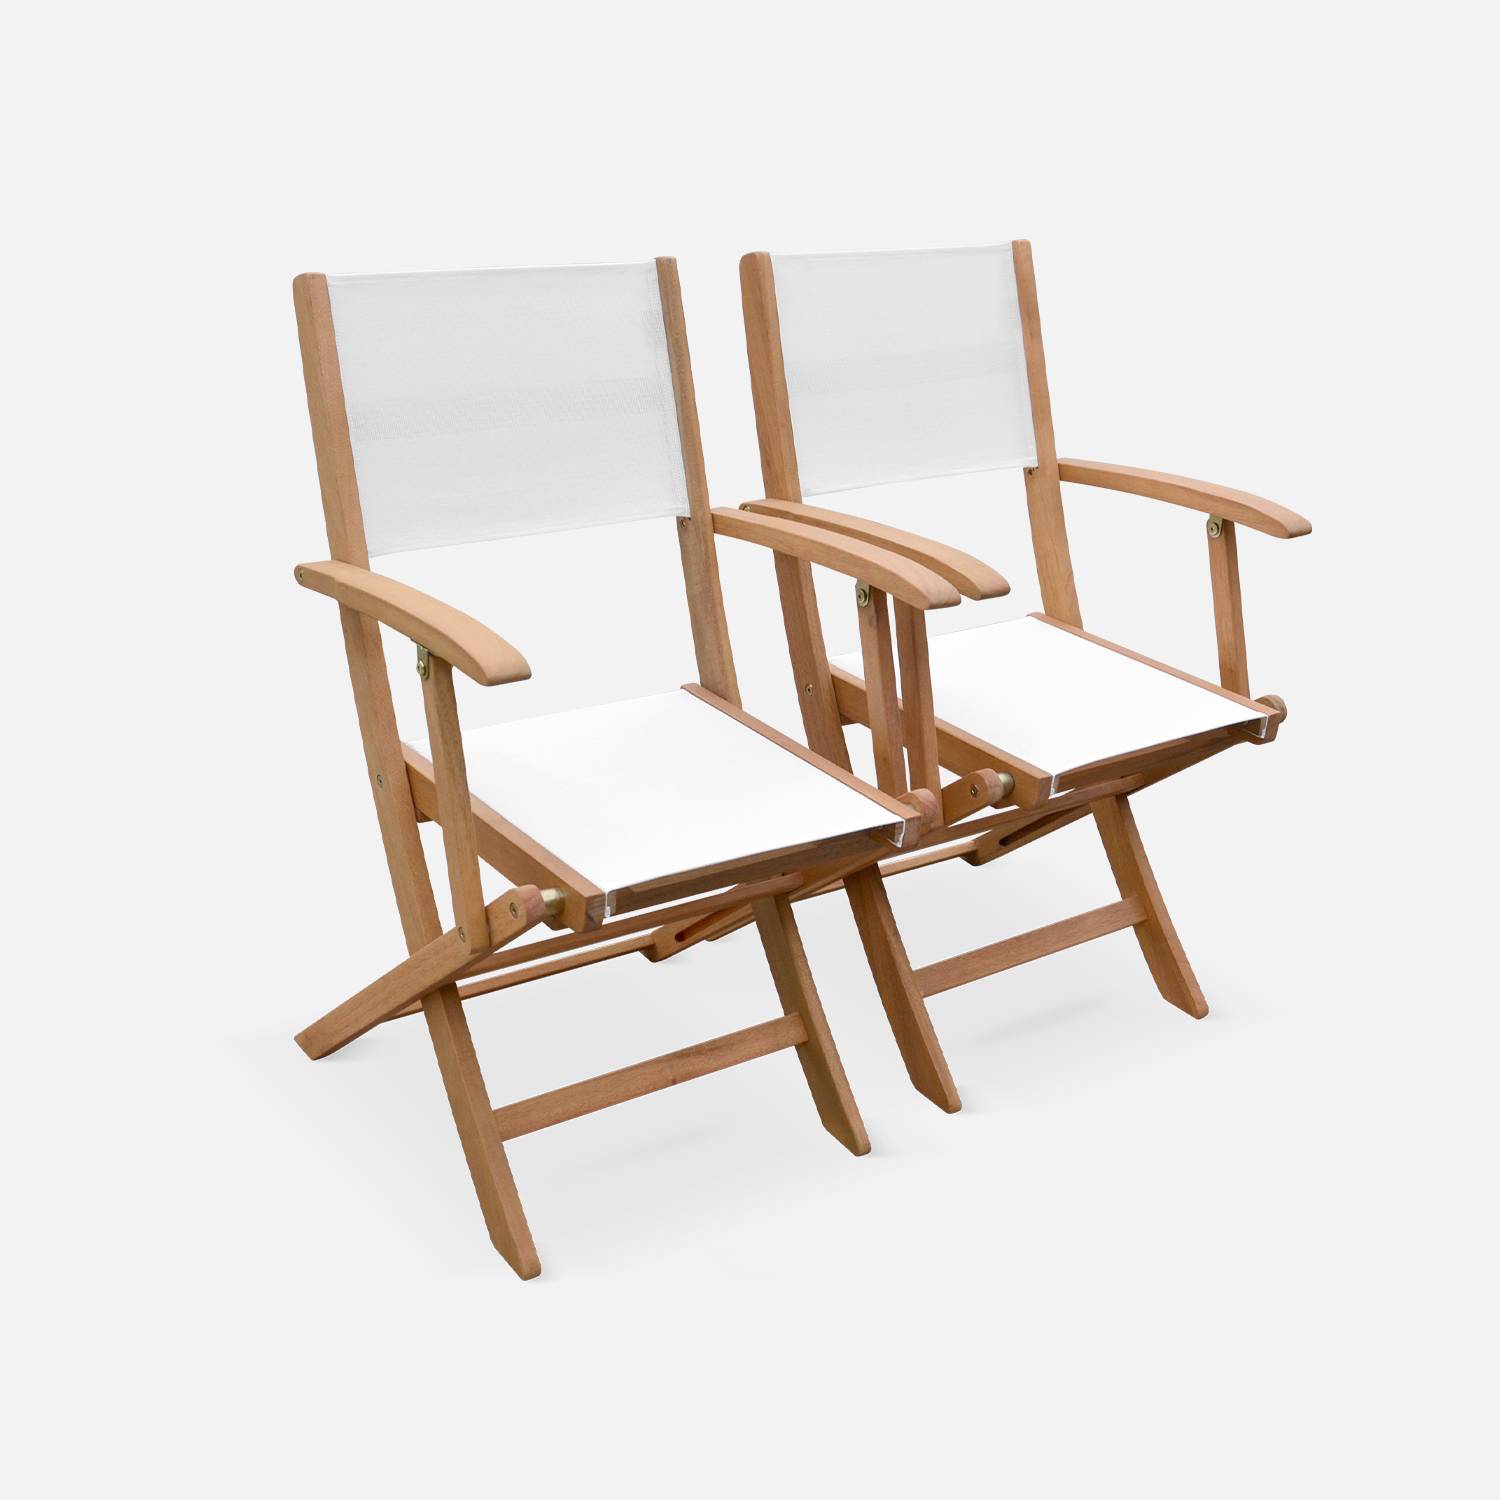 Ausziehbare Gartenmöbel aus Holz - Almeria Tisch 200/250/300cm mit 2 Verlängerungen, 2 Sesseln und 8 Stühlen, aus geöltem FSC Eukalyptusholz und weißem Textilene Photo6